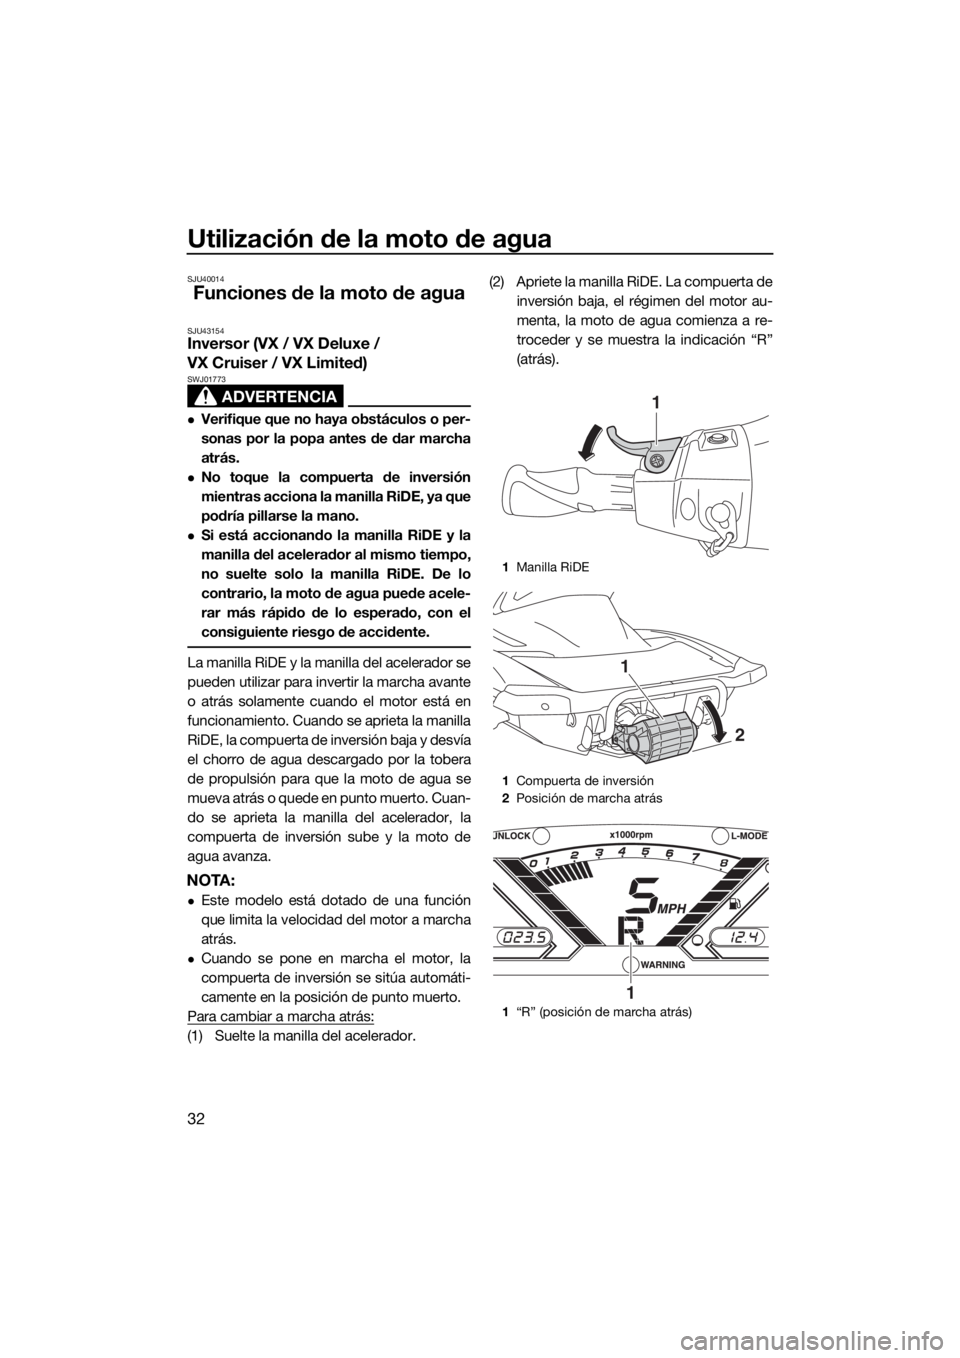 YAMAHA VX 2019  Manuale de Empleo (in Spanish) Utilización de la moto de agua
32
SJU40014
Funciones de la moto de agua
SJU43154Inversor (VX / VX Deluxe / 
VX Cruiser / VX Limited)
ADVERTENCIA
SWJ01773
Verifique que no haya obstáculos o per-
s